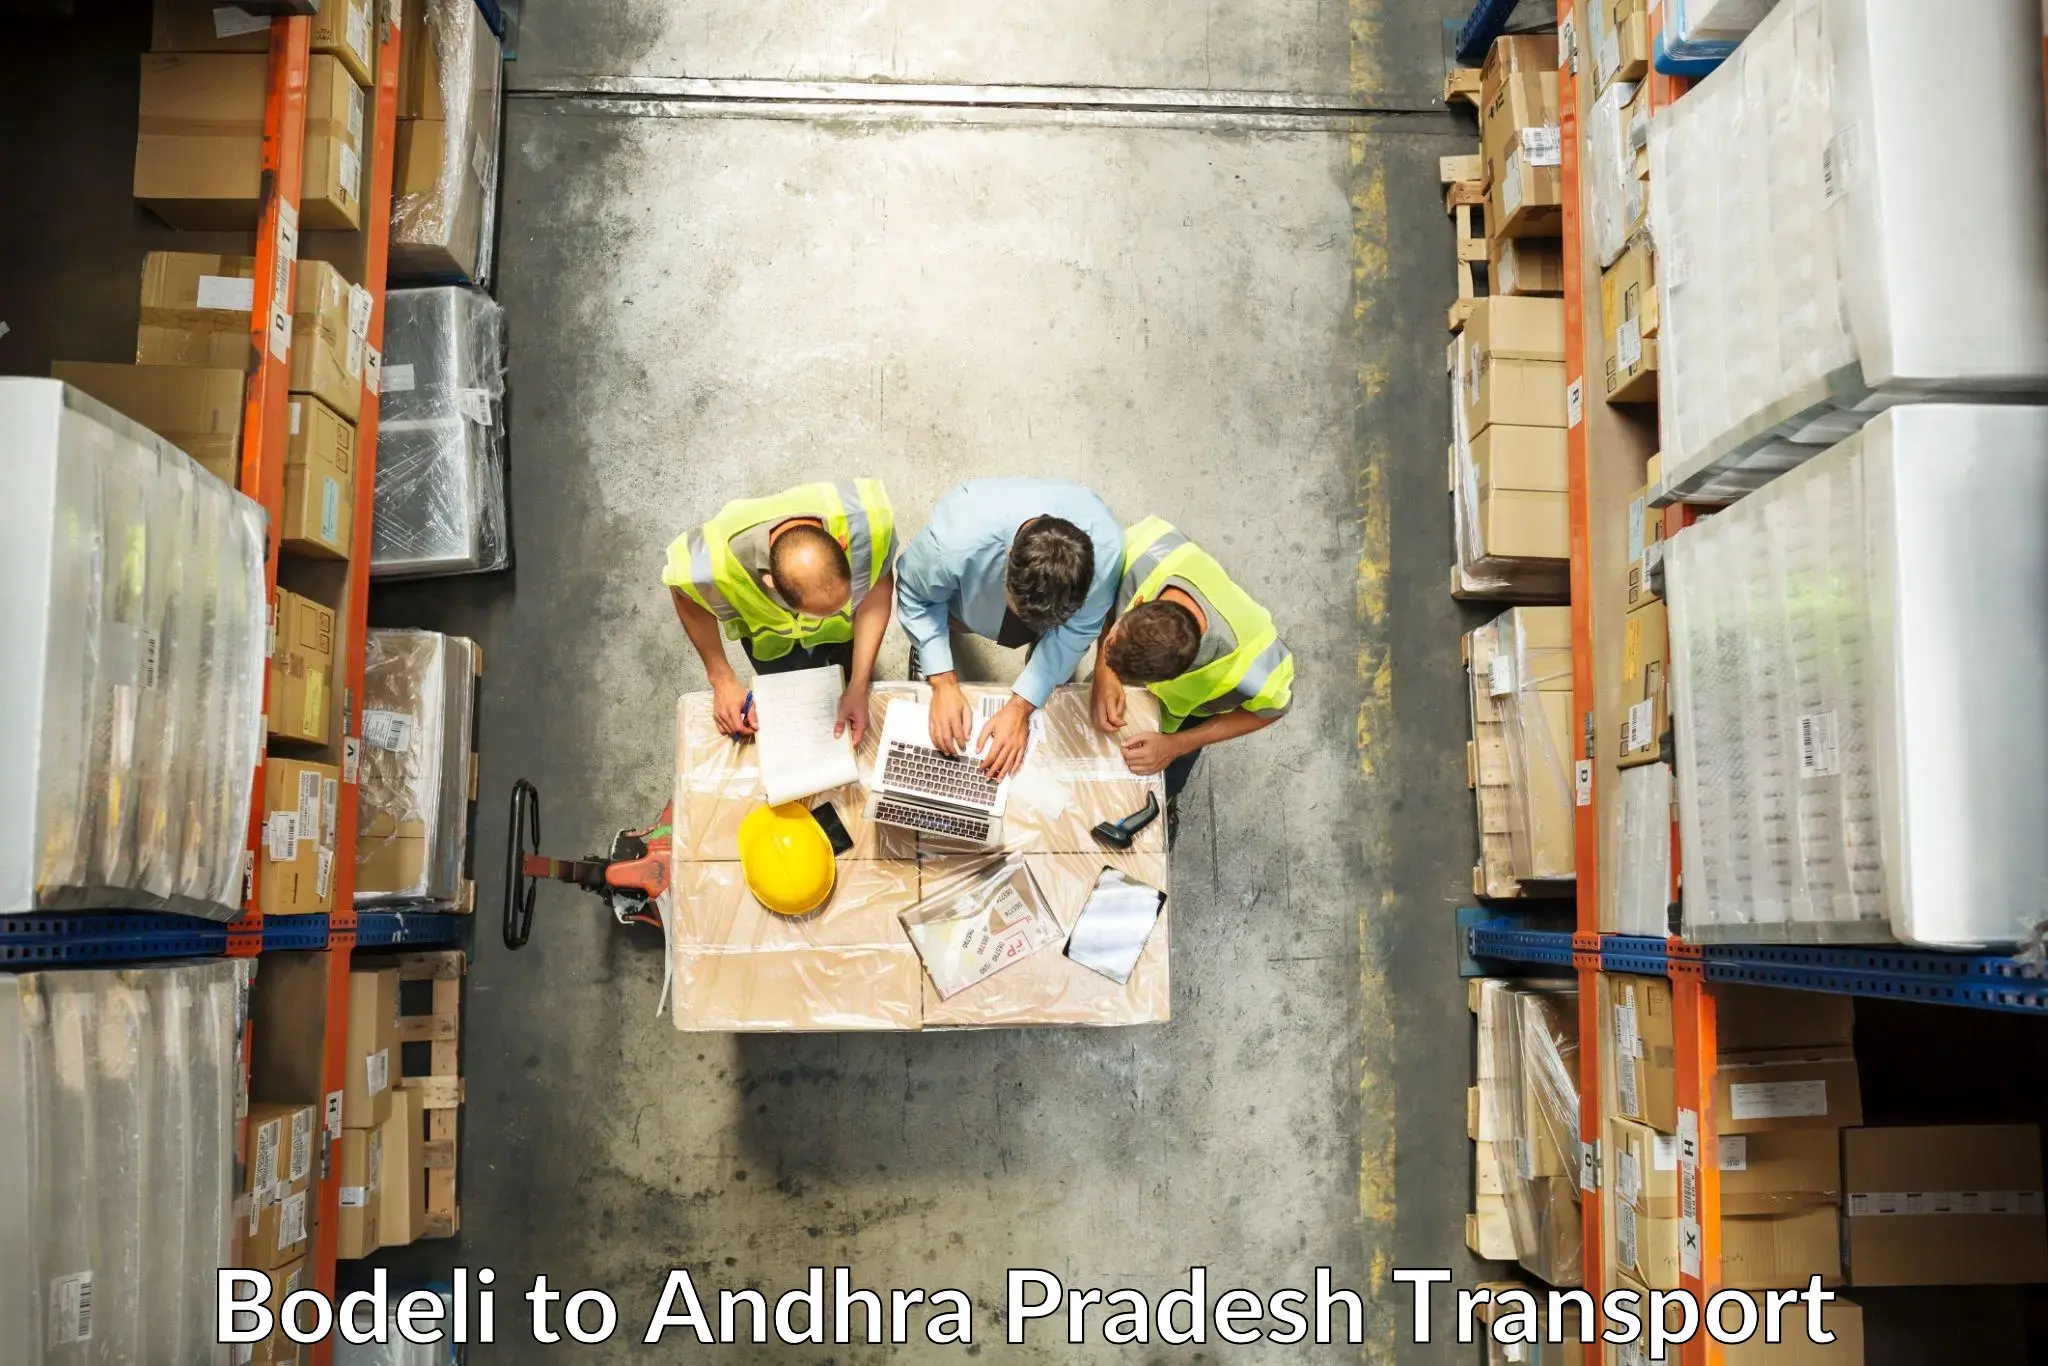 Truck transport companies in India Bodeli to Kathipudi